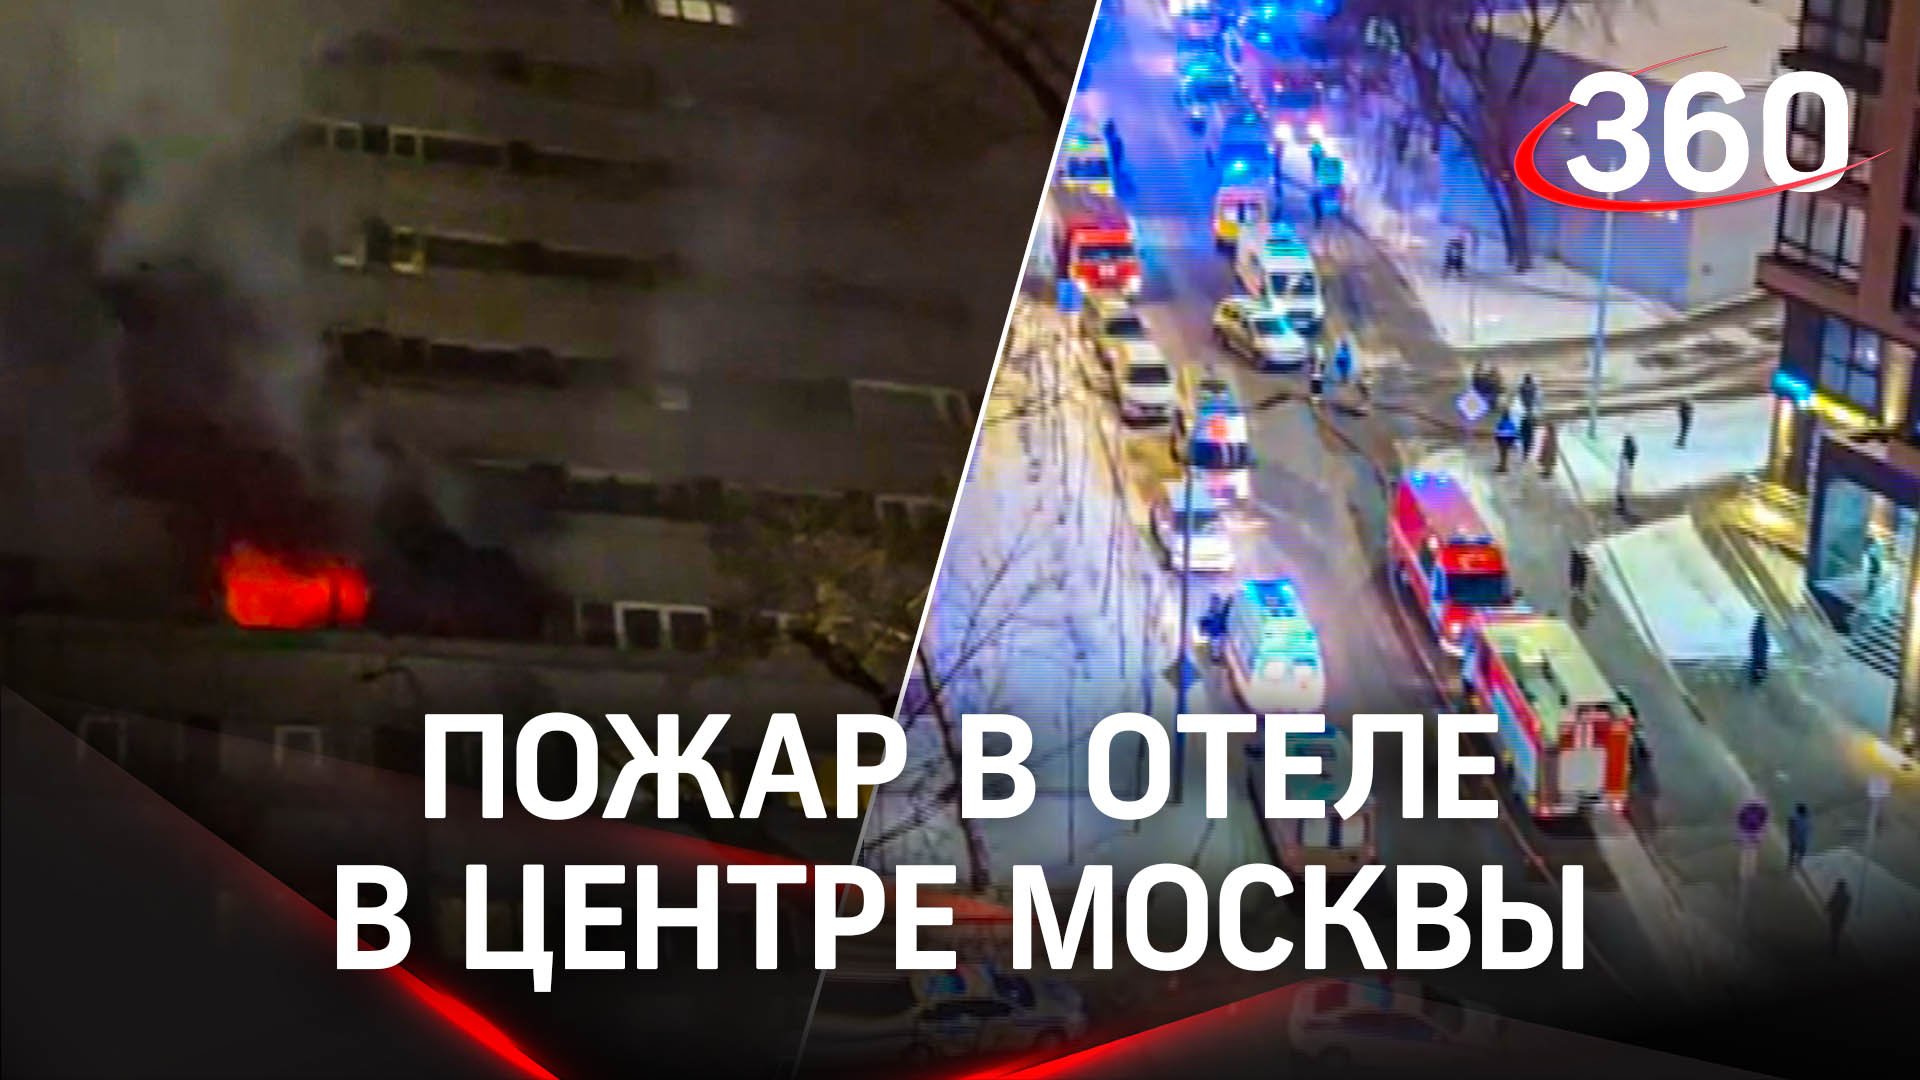 Семеро погибших и уголовное дело: последствия возгорания отеля в центре Москвы. Кадры ЧП